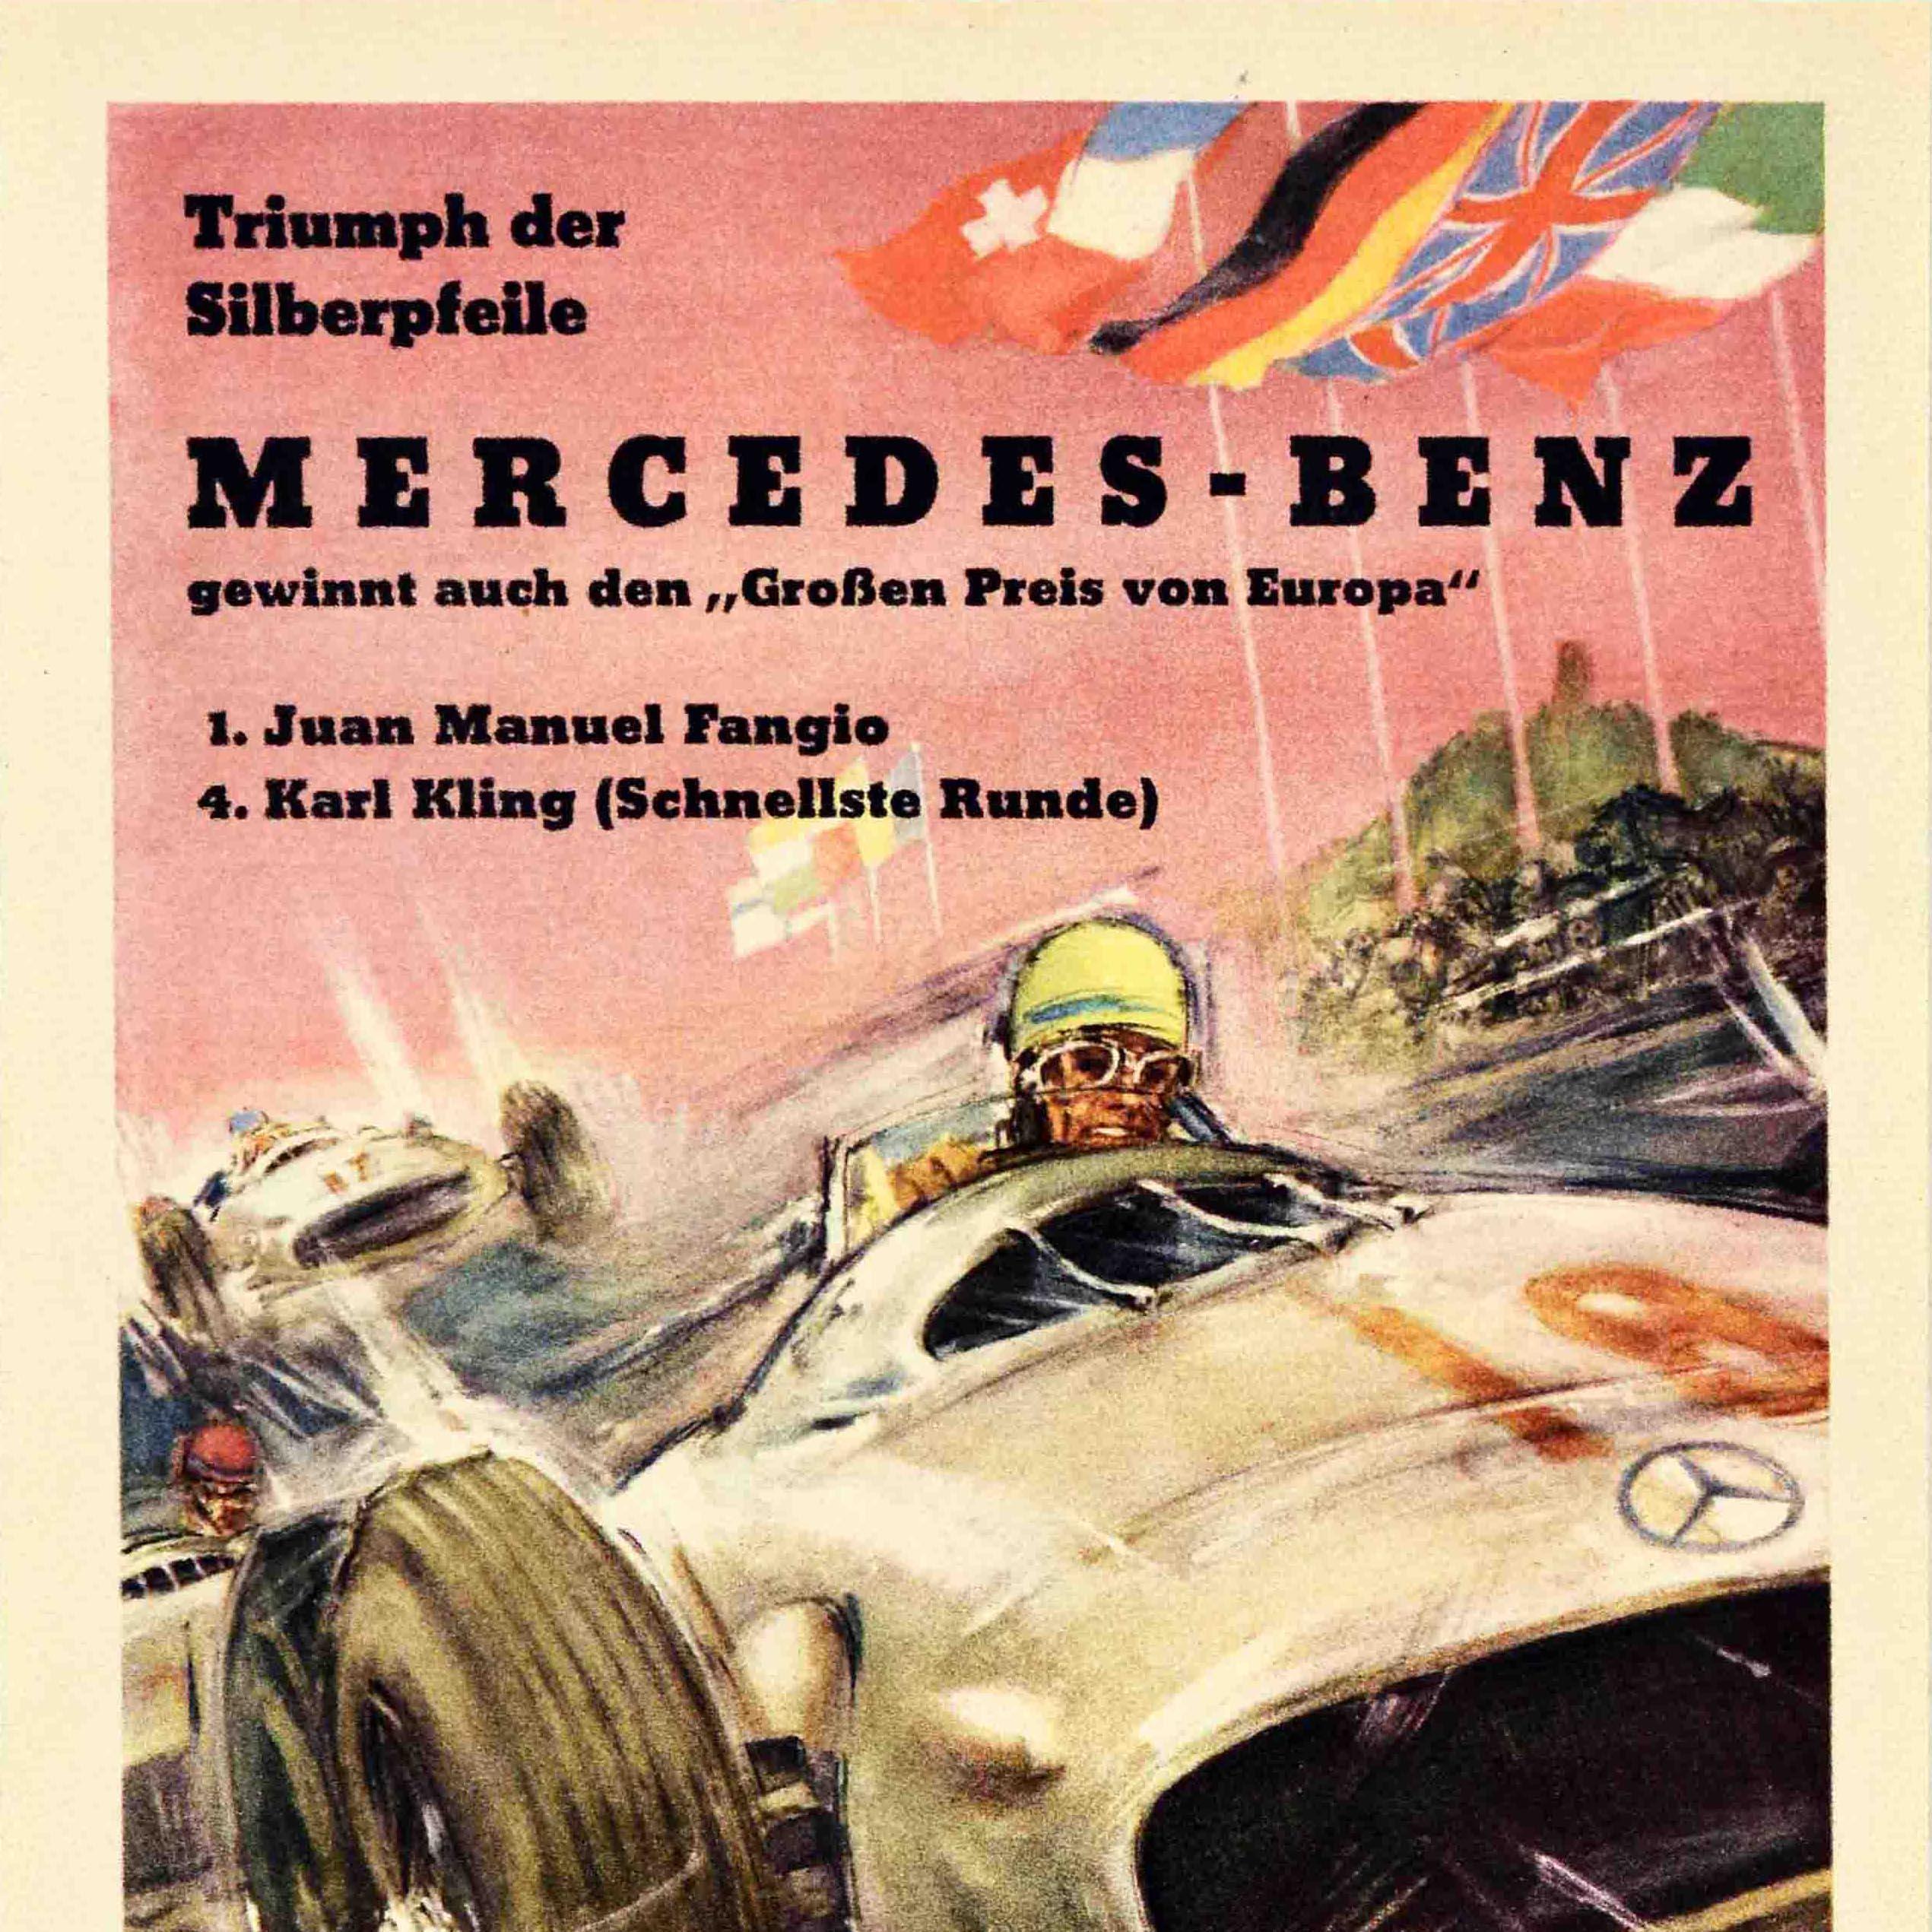 mercedes benz poster vintage